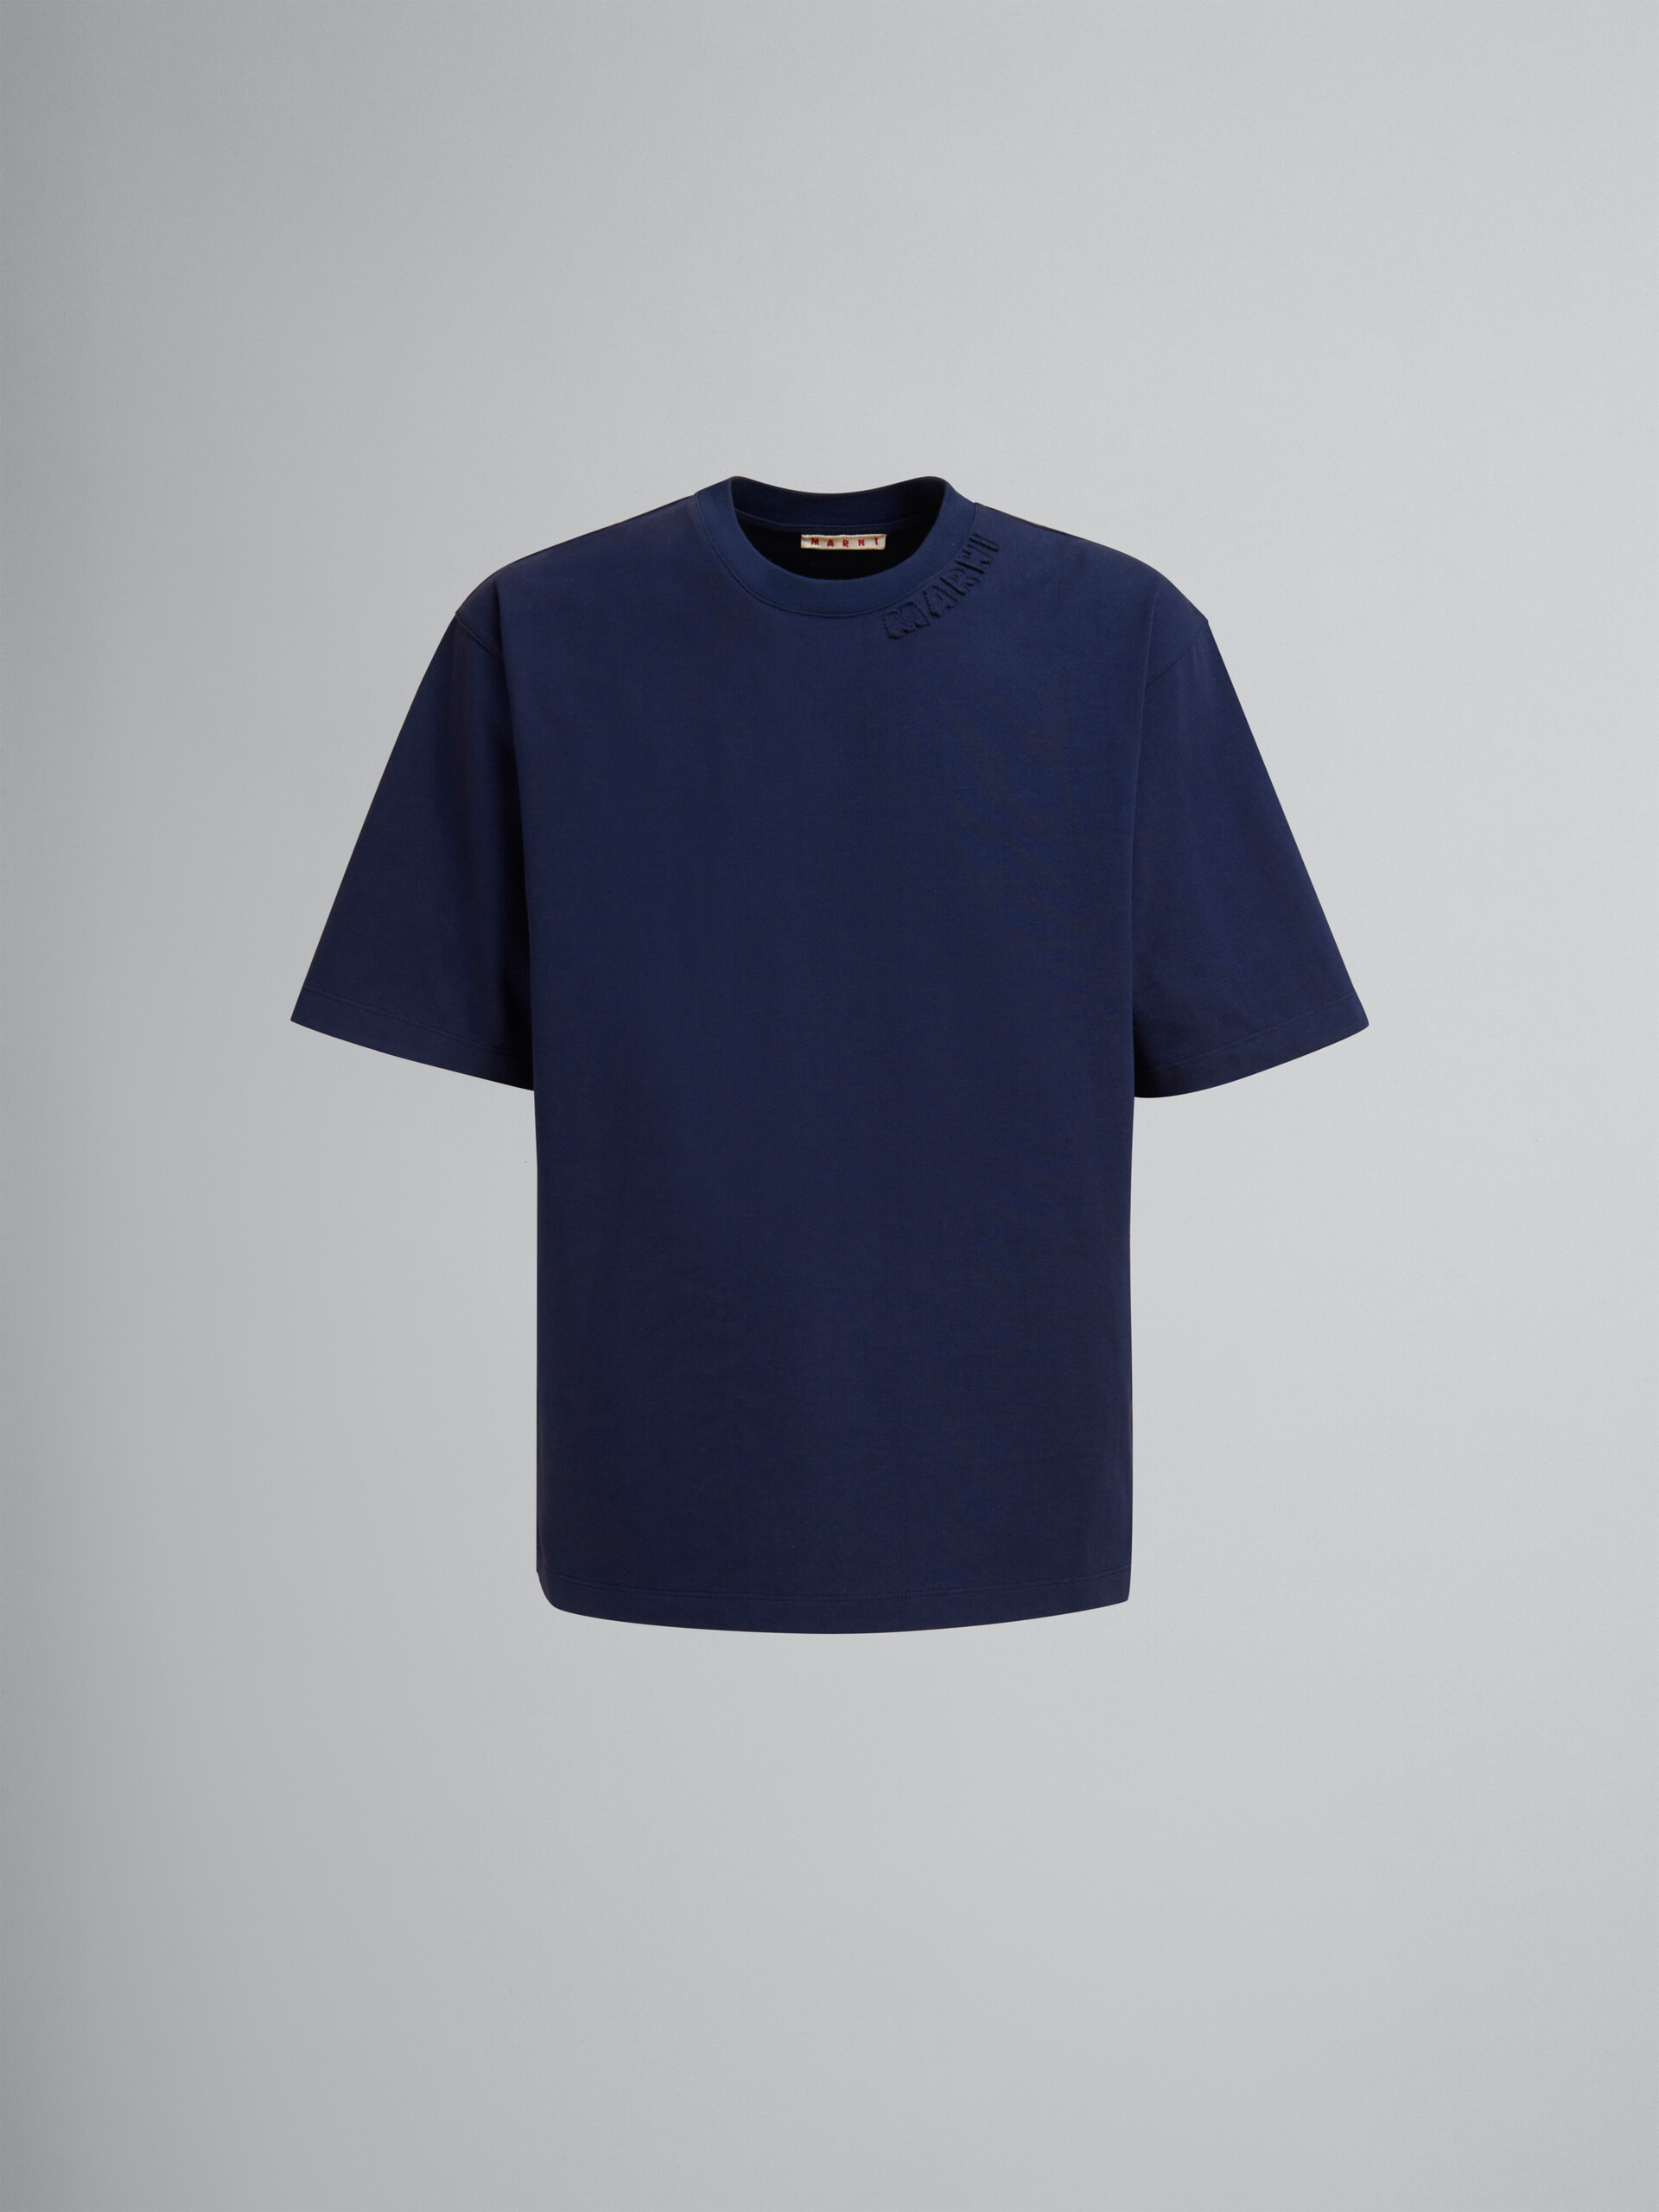 Camiseta oversize azul claro de algodón orgánico con parches Marni - Camisetas - Image 1